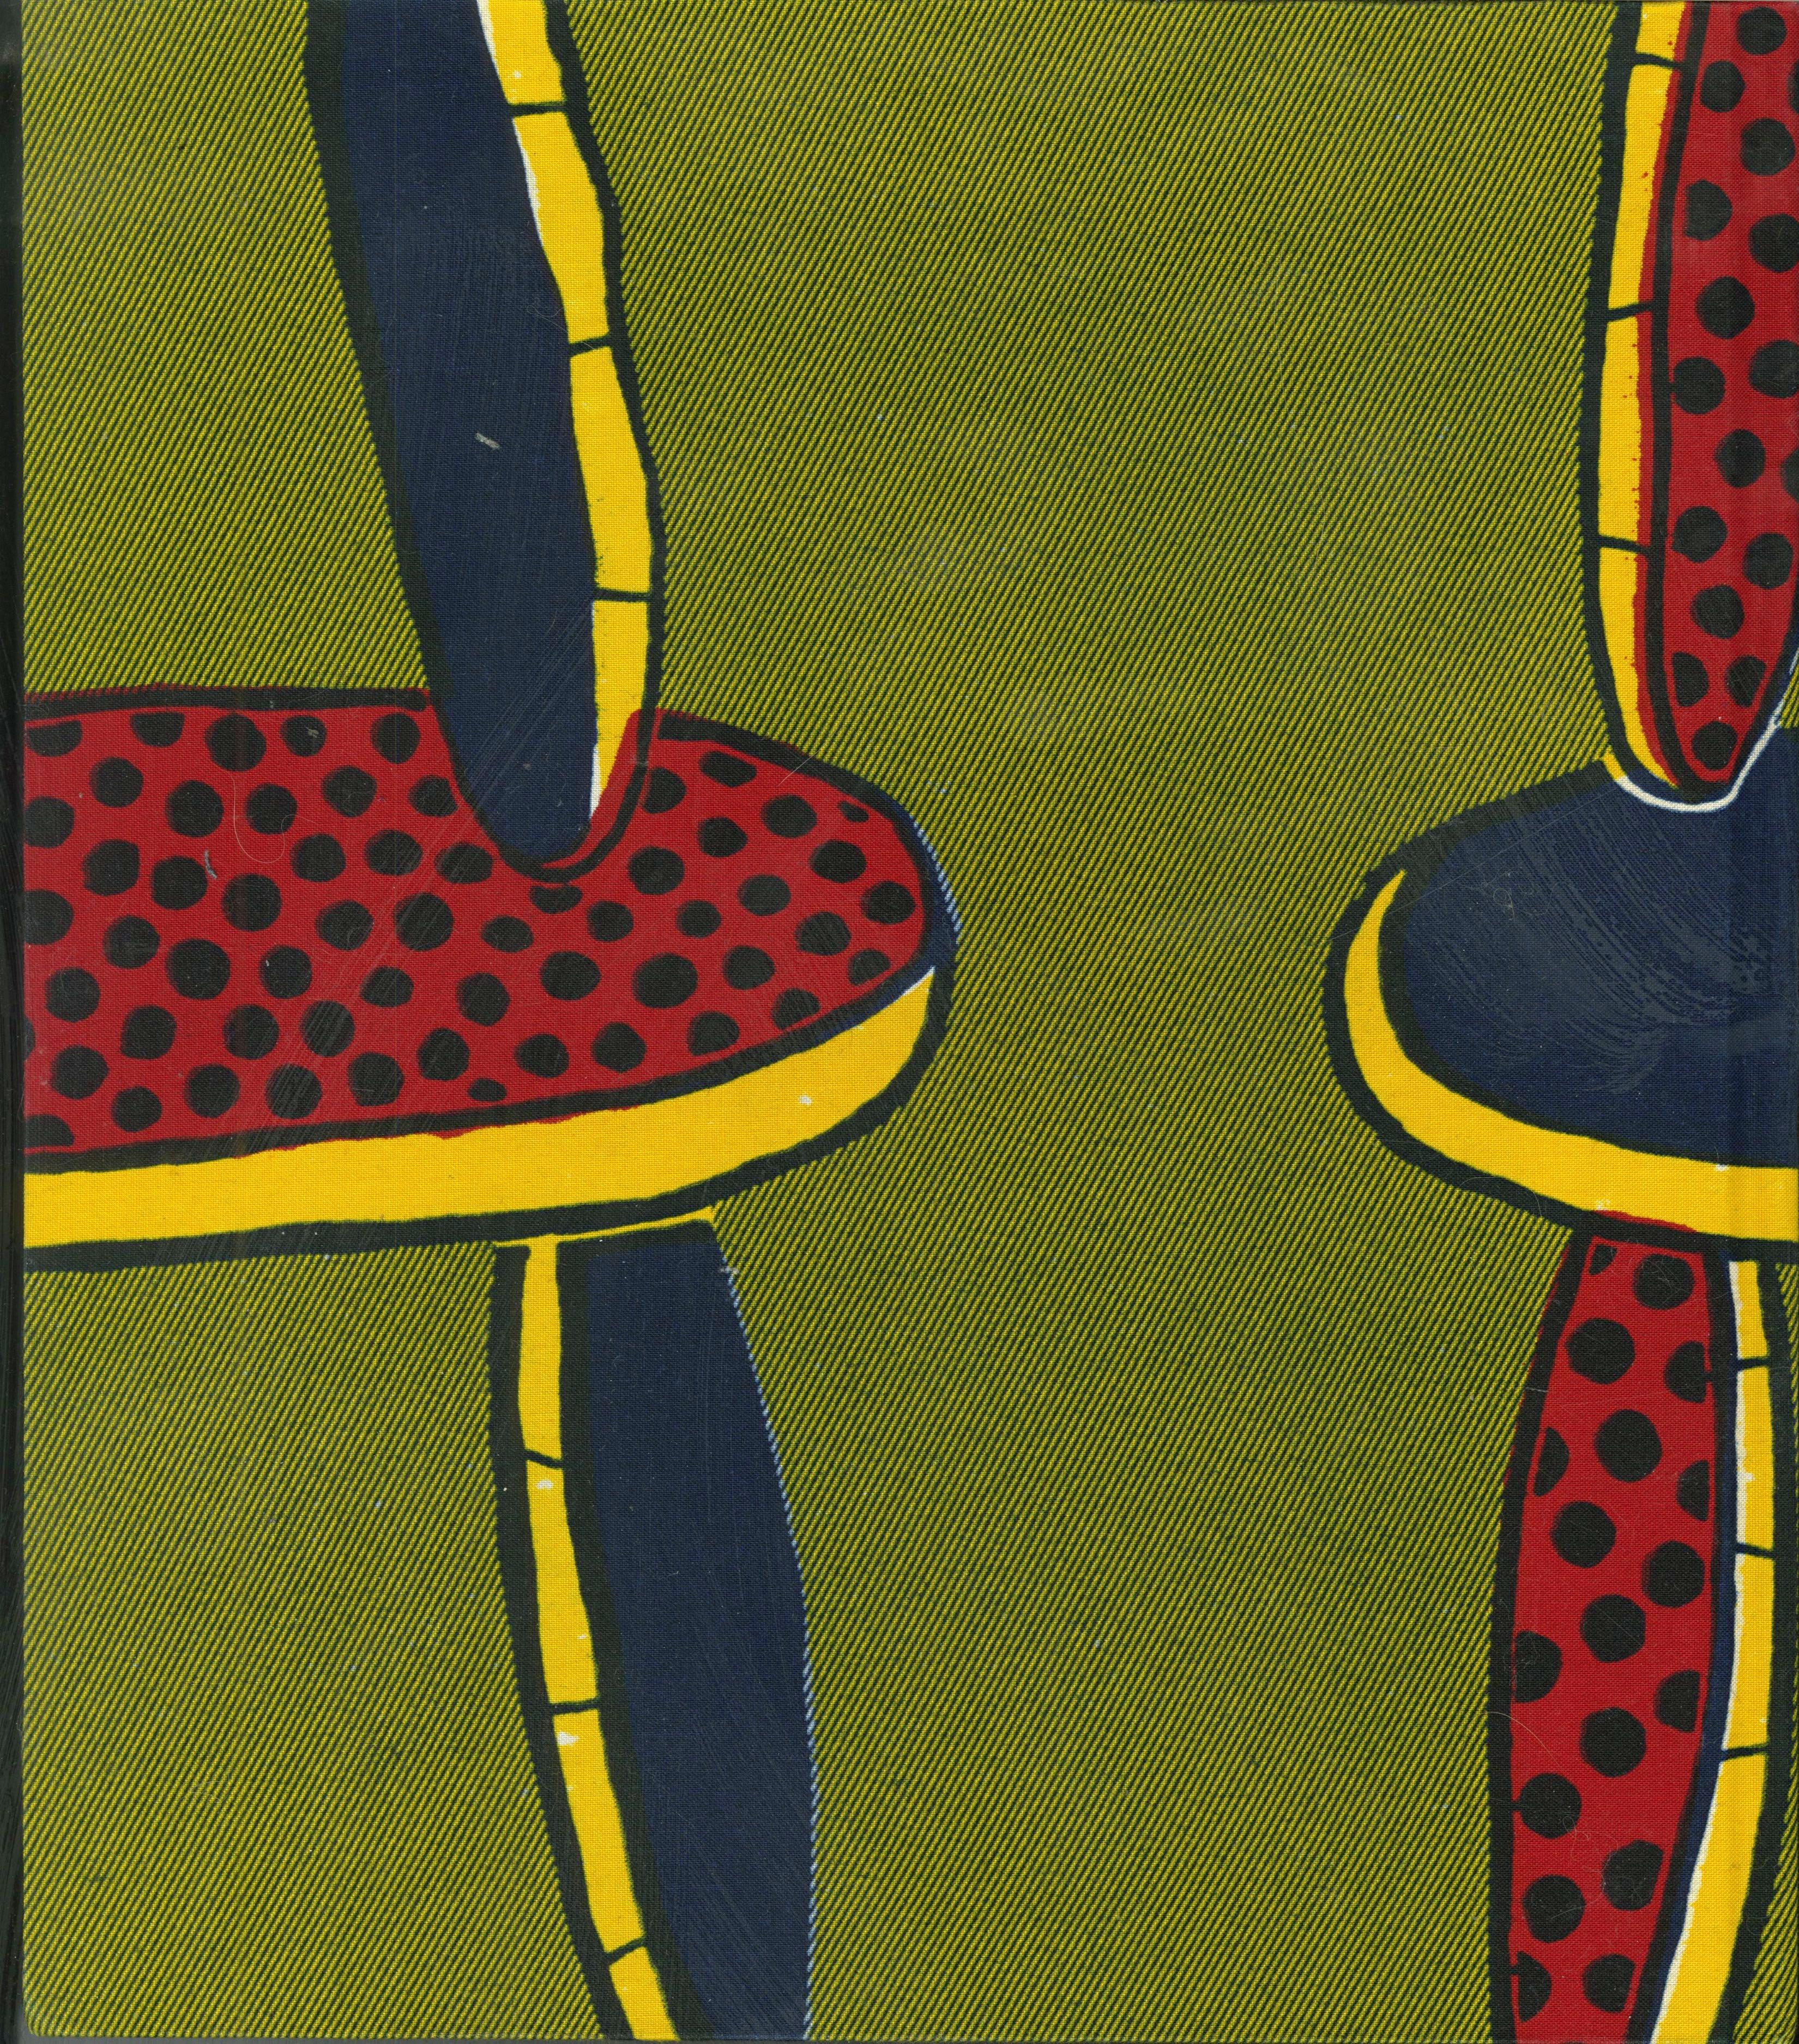 Yinka Shonibare
Fabrikation, 2013
Original holländischer Wachsdruck nach Wahl des Künstlers auf gebundener Monographie mit stoffbezogenem Karton
12 1/2 × 11 × 1 1/2 Zoll
Auflage 21/50 (jedes Exemplar ein Unikat)
Handsigniert, datiert und nummeriert